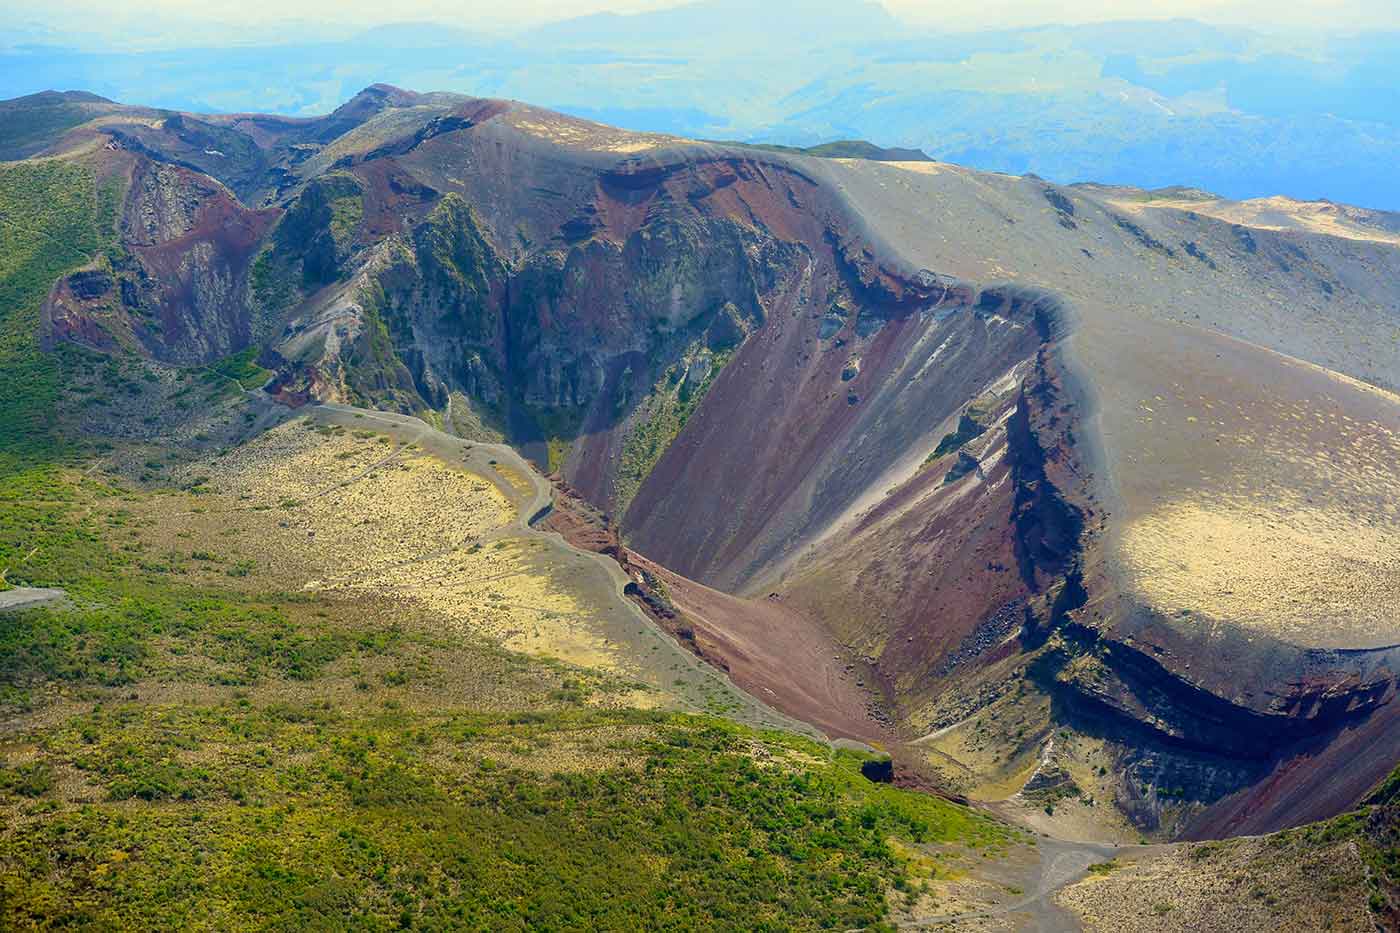 Mt. Tarawera Volcano